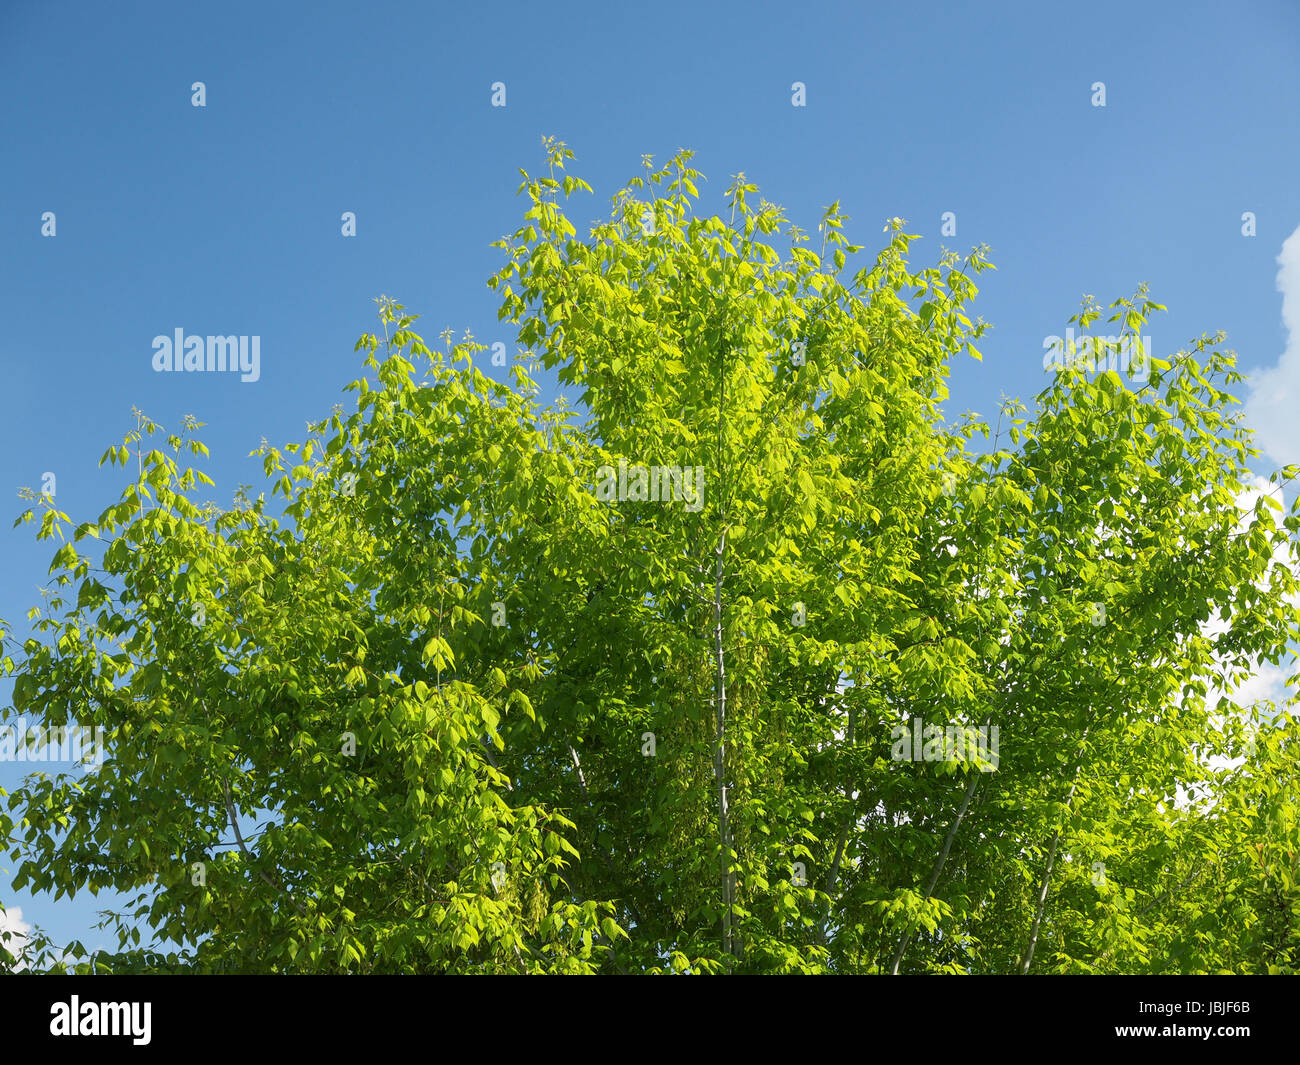 Effetto del filtro di polarizzazione sugli alberi e cielo per migliorare l'aspetto del paesaggio - il cielo è più blu e le foglie sono ecologici Foto Stock